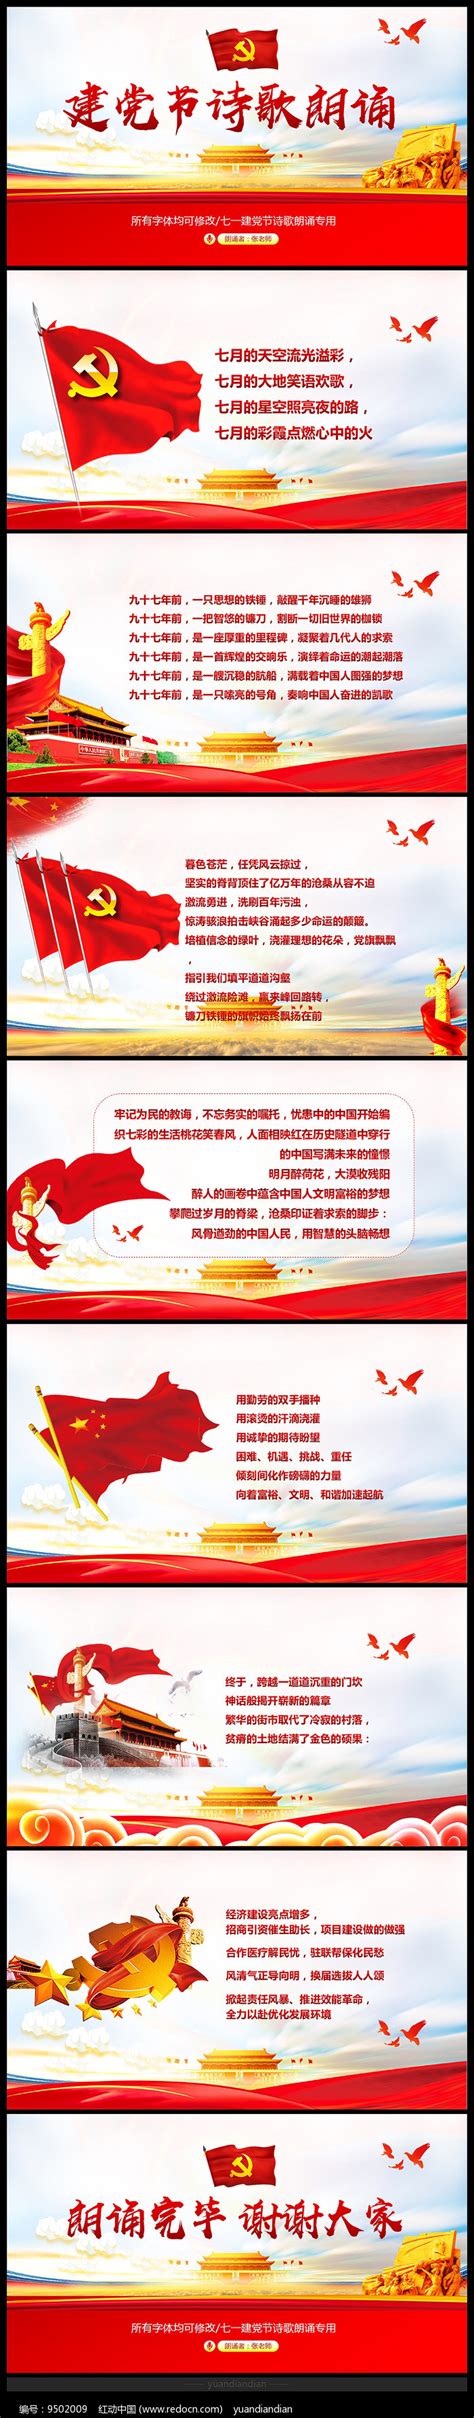 中文与传媒系在“颂中华经典，赞抗疫英雄”朗诵比赛中获得一等奖